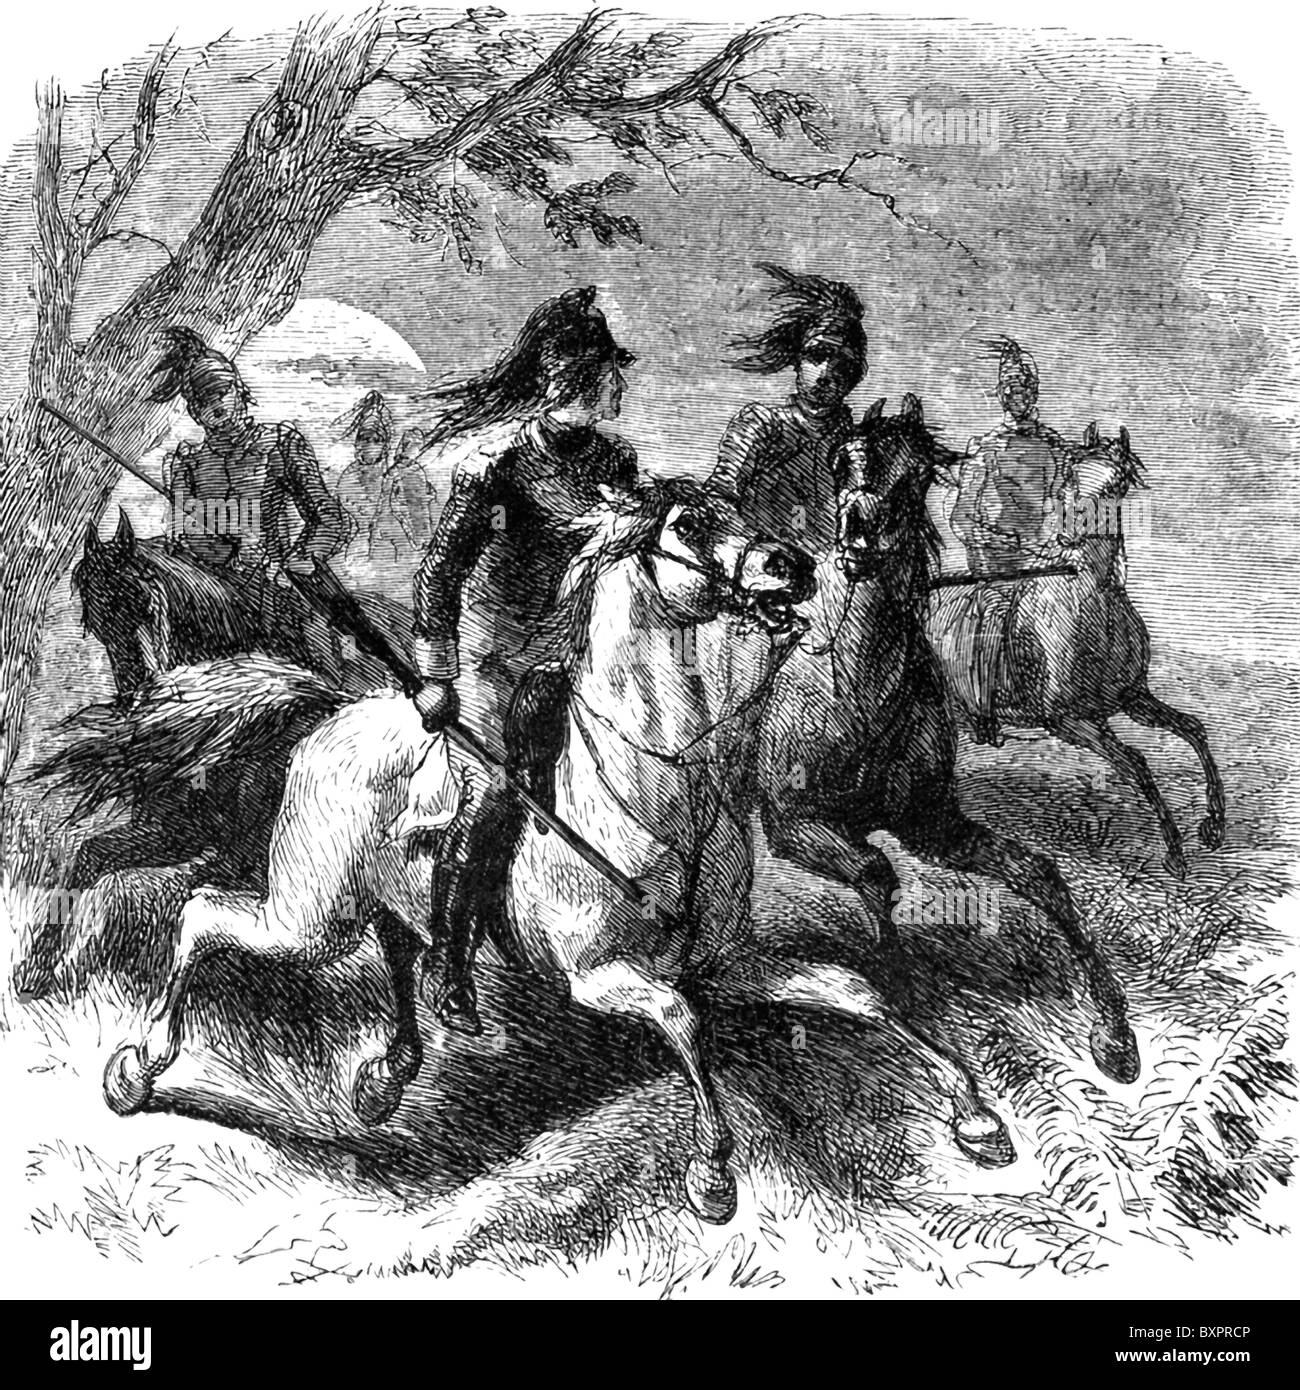 Francis Marion, un chef de parti dans la révolution américaine, poursuit le British avec sa cavalerie. Banque D'Images